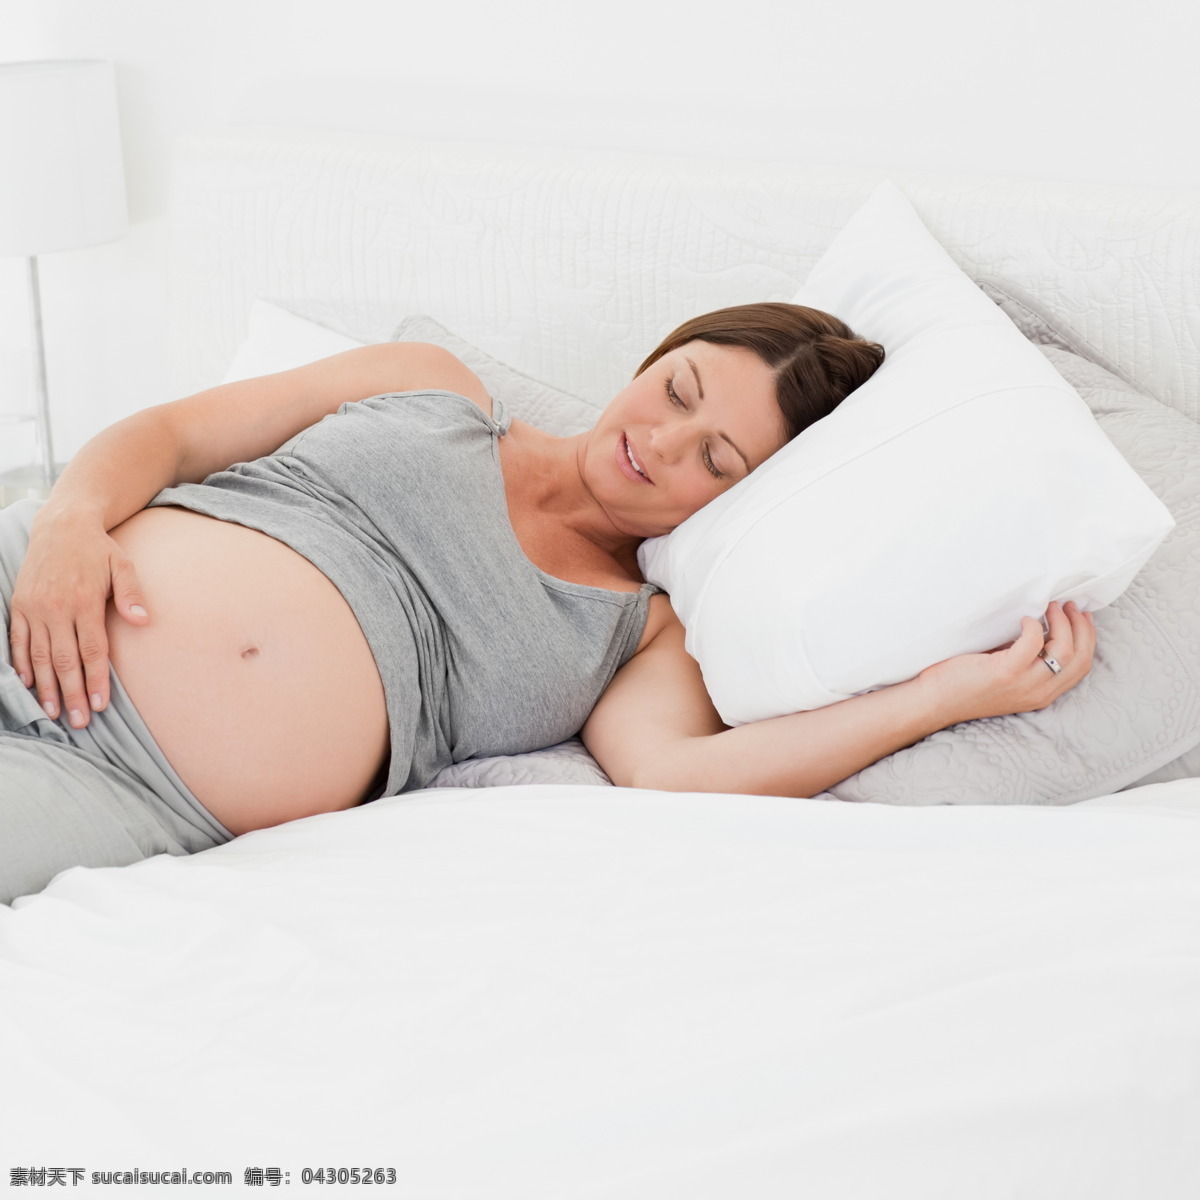 孕妇图片素材 女性 妇女 女人 怀孕 孕妇 准妈妈 生活人物 人物图片